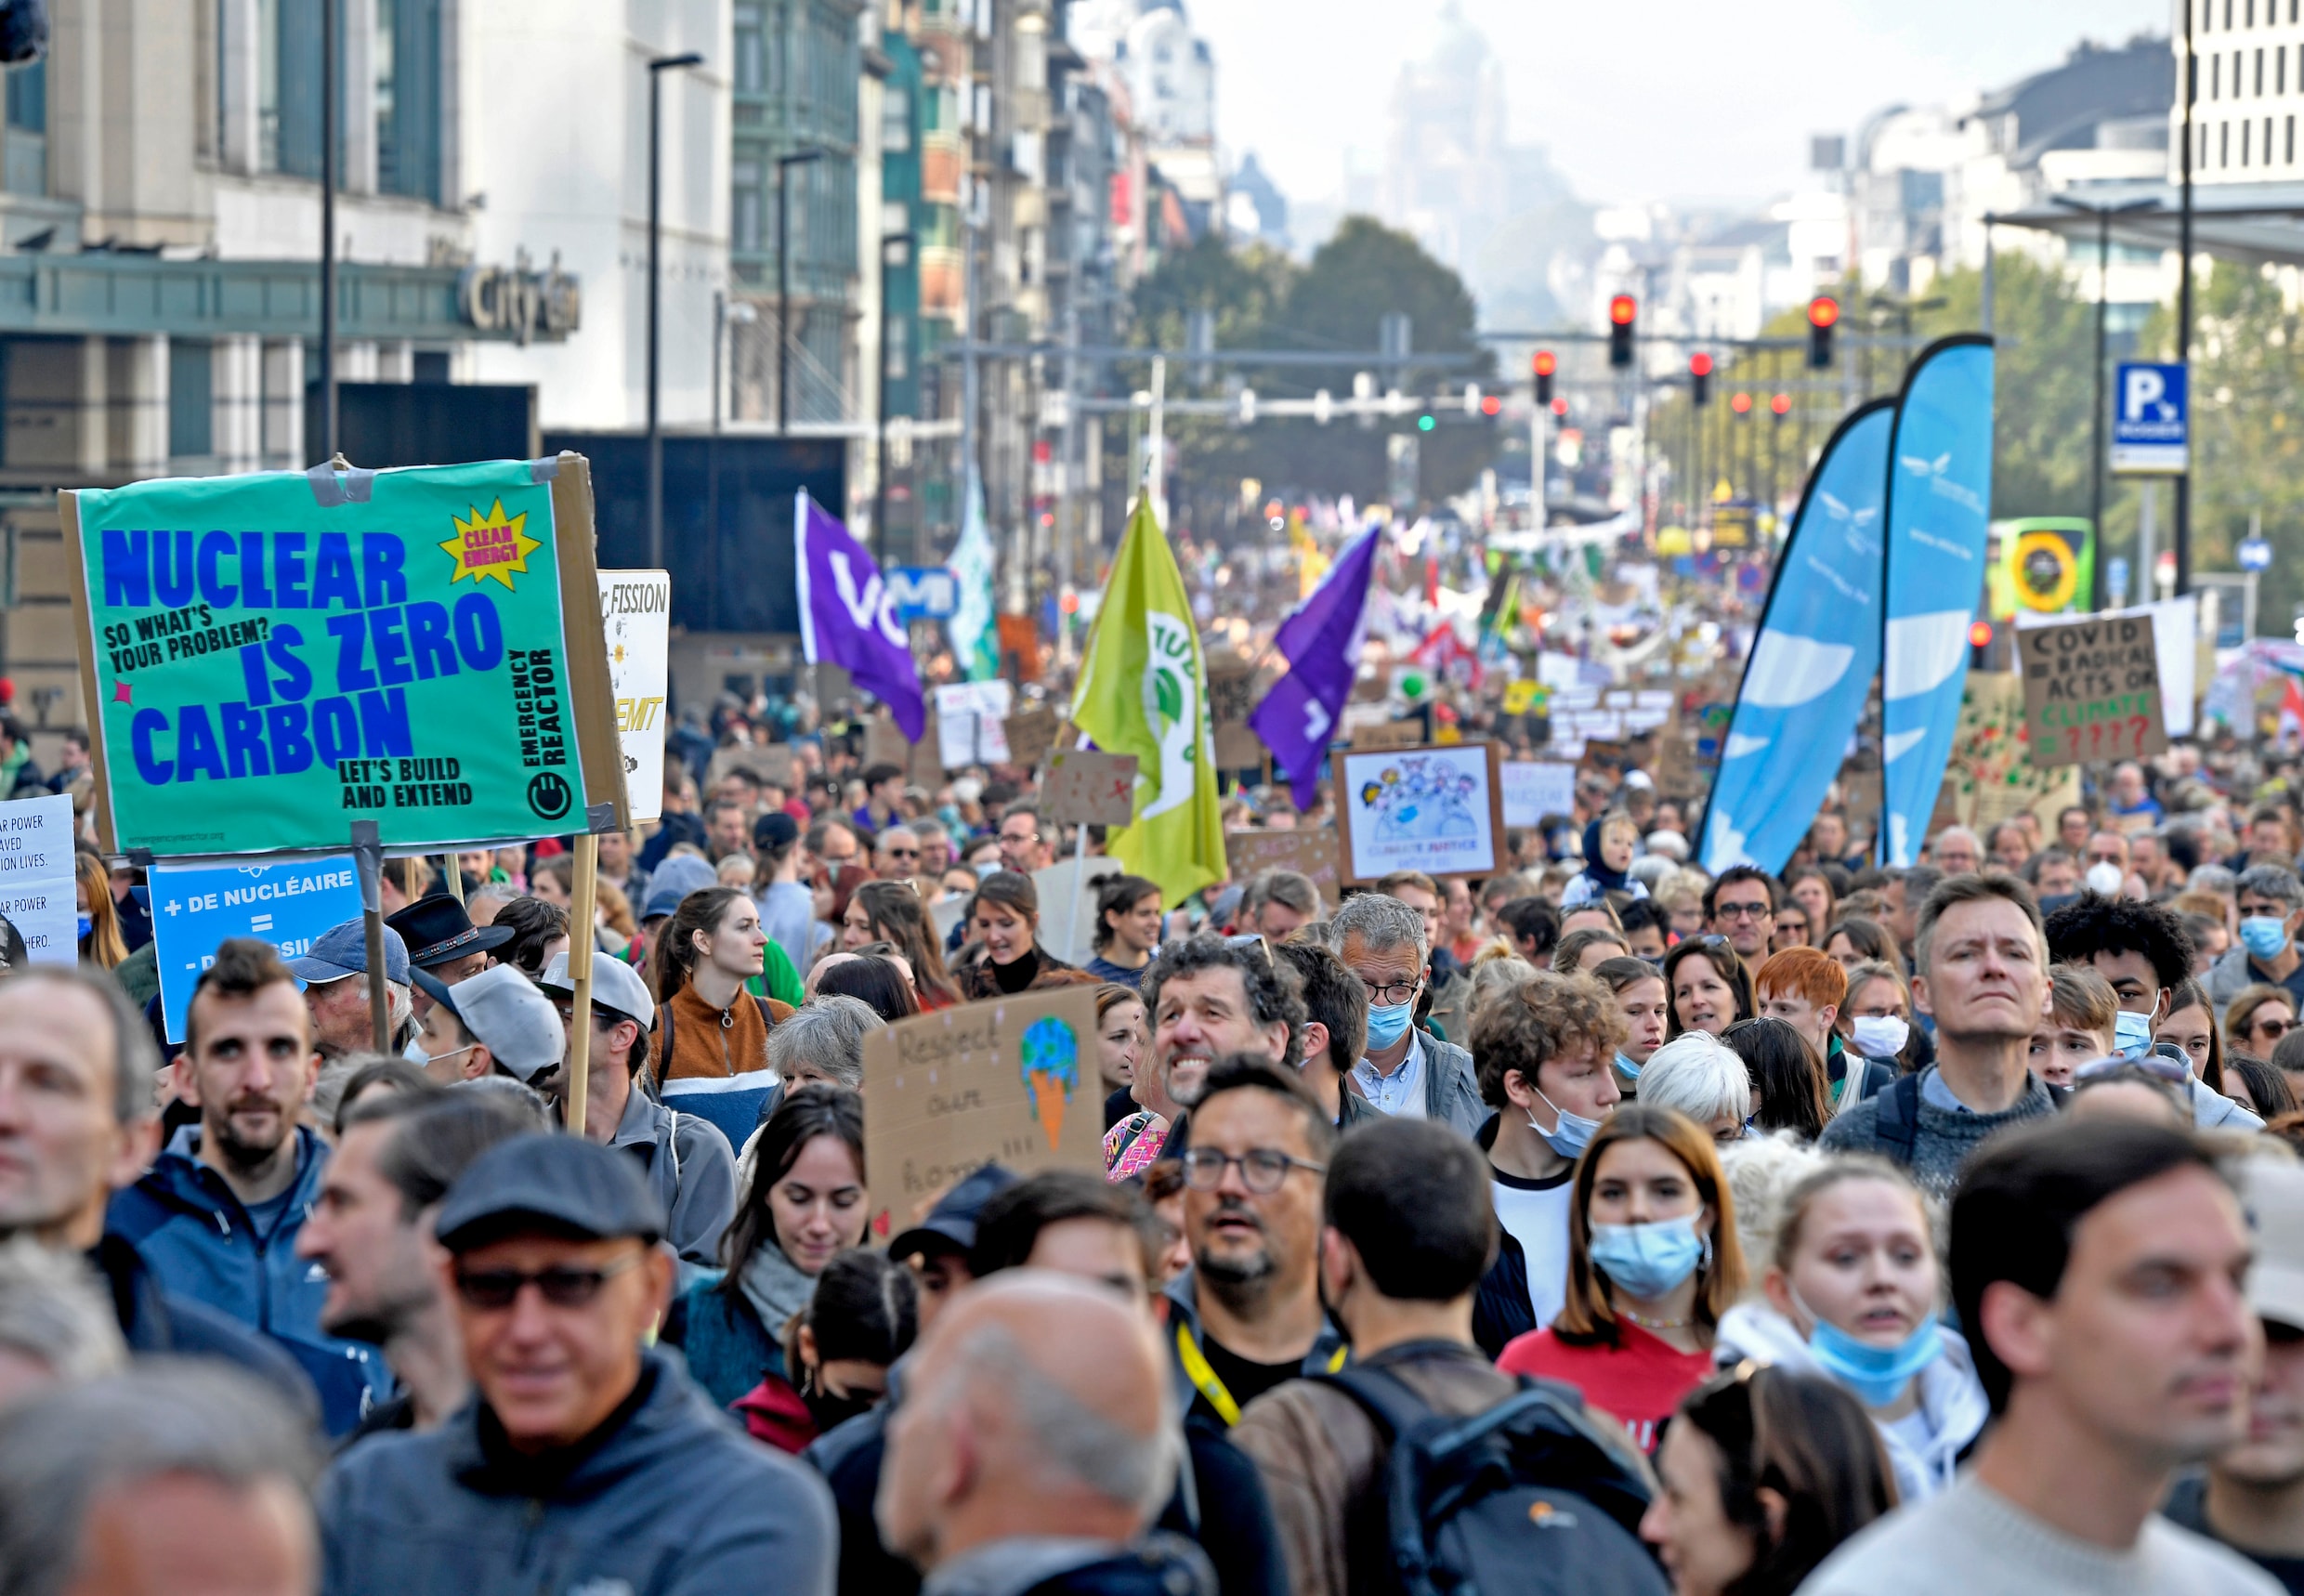 ▶ Klimaatmars in Brussel trekt tienduizenden deelnemers: ‘We zijn terug en we laten niet los’